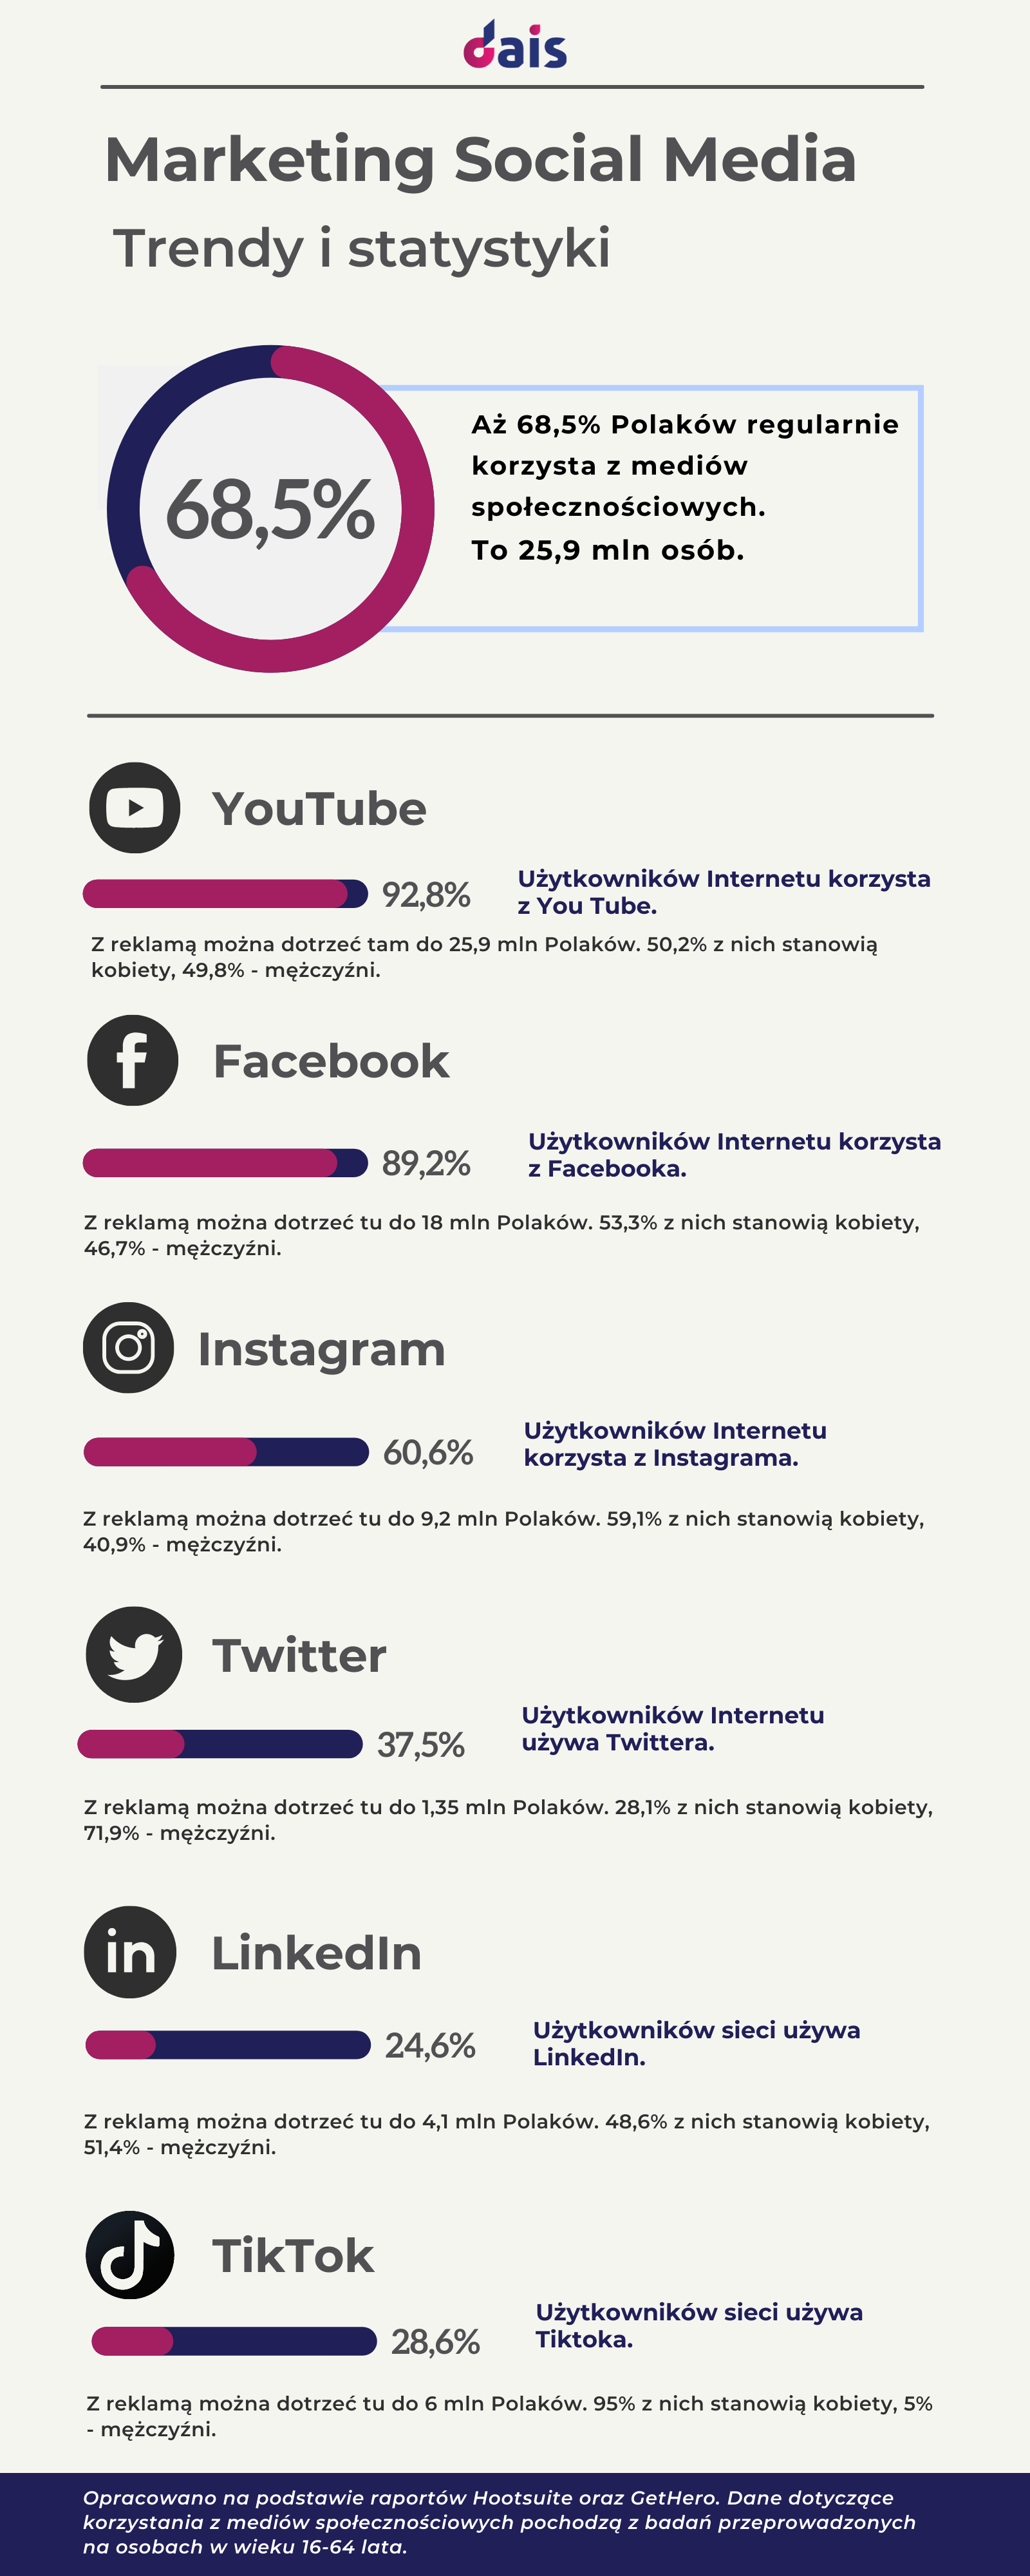 social media marketing trendy i statystyki